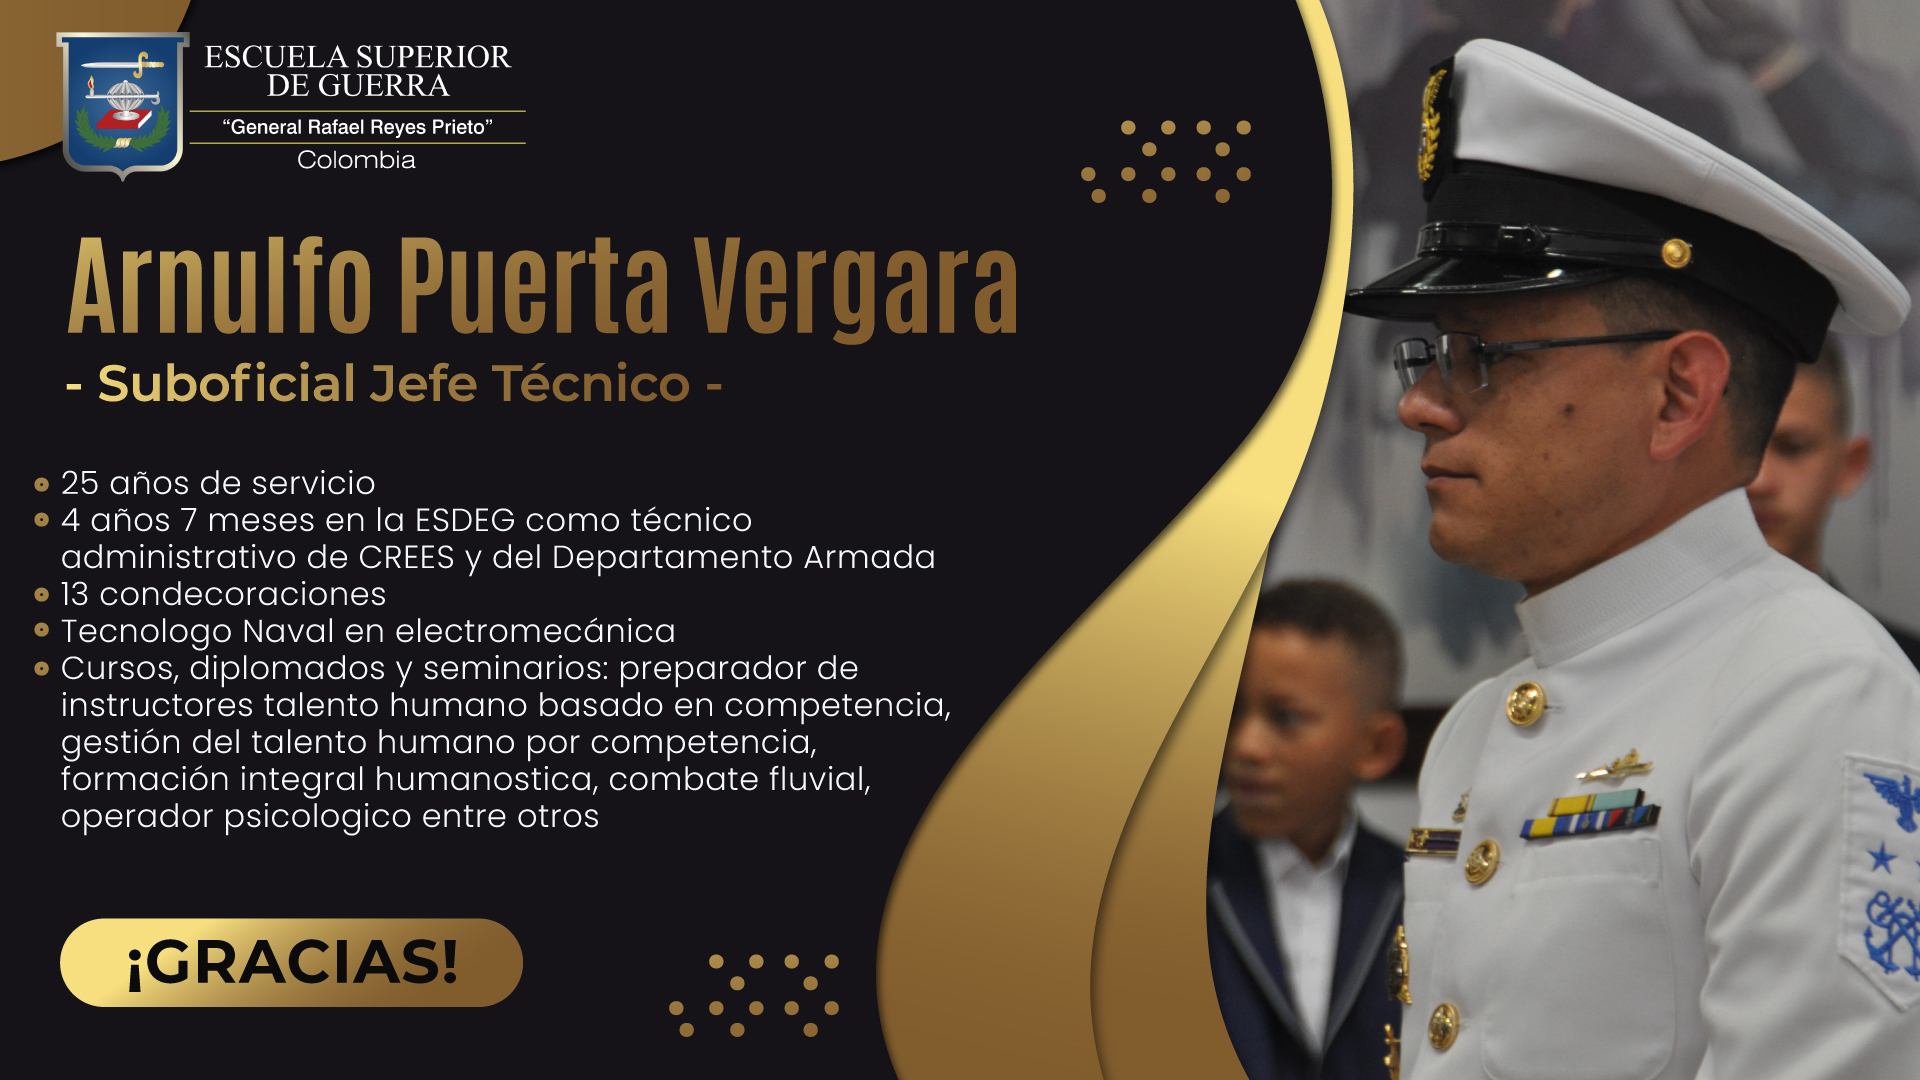 En honor al Suboficial Jefe Técnico Arnulfo Puerta Vergara